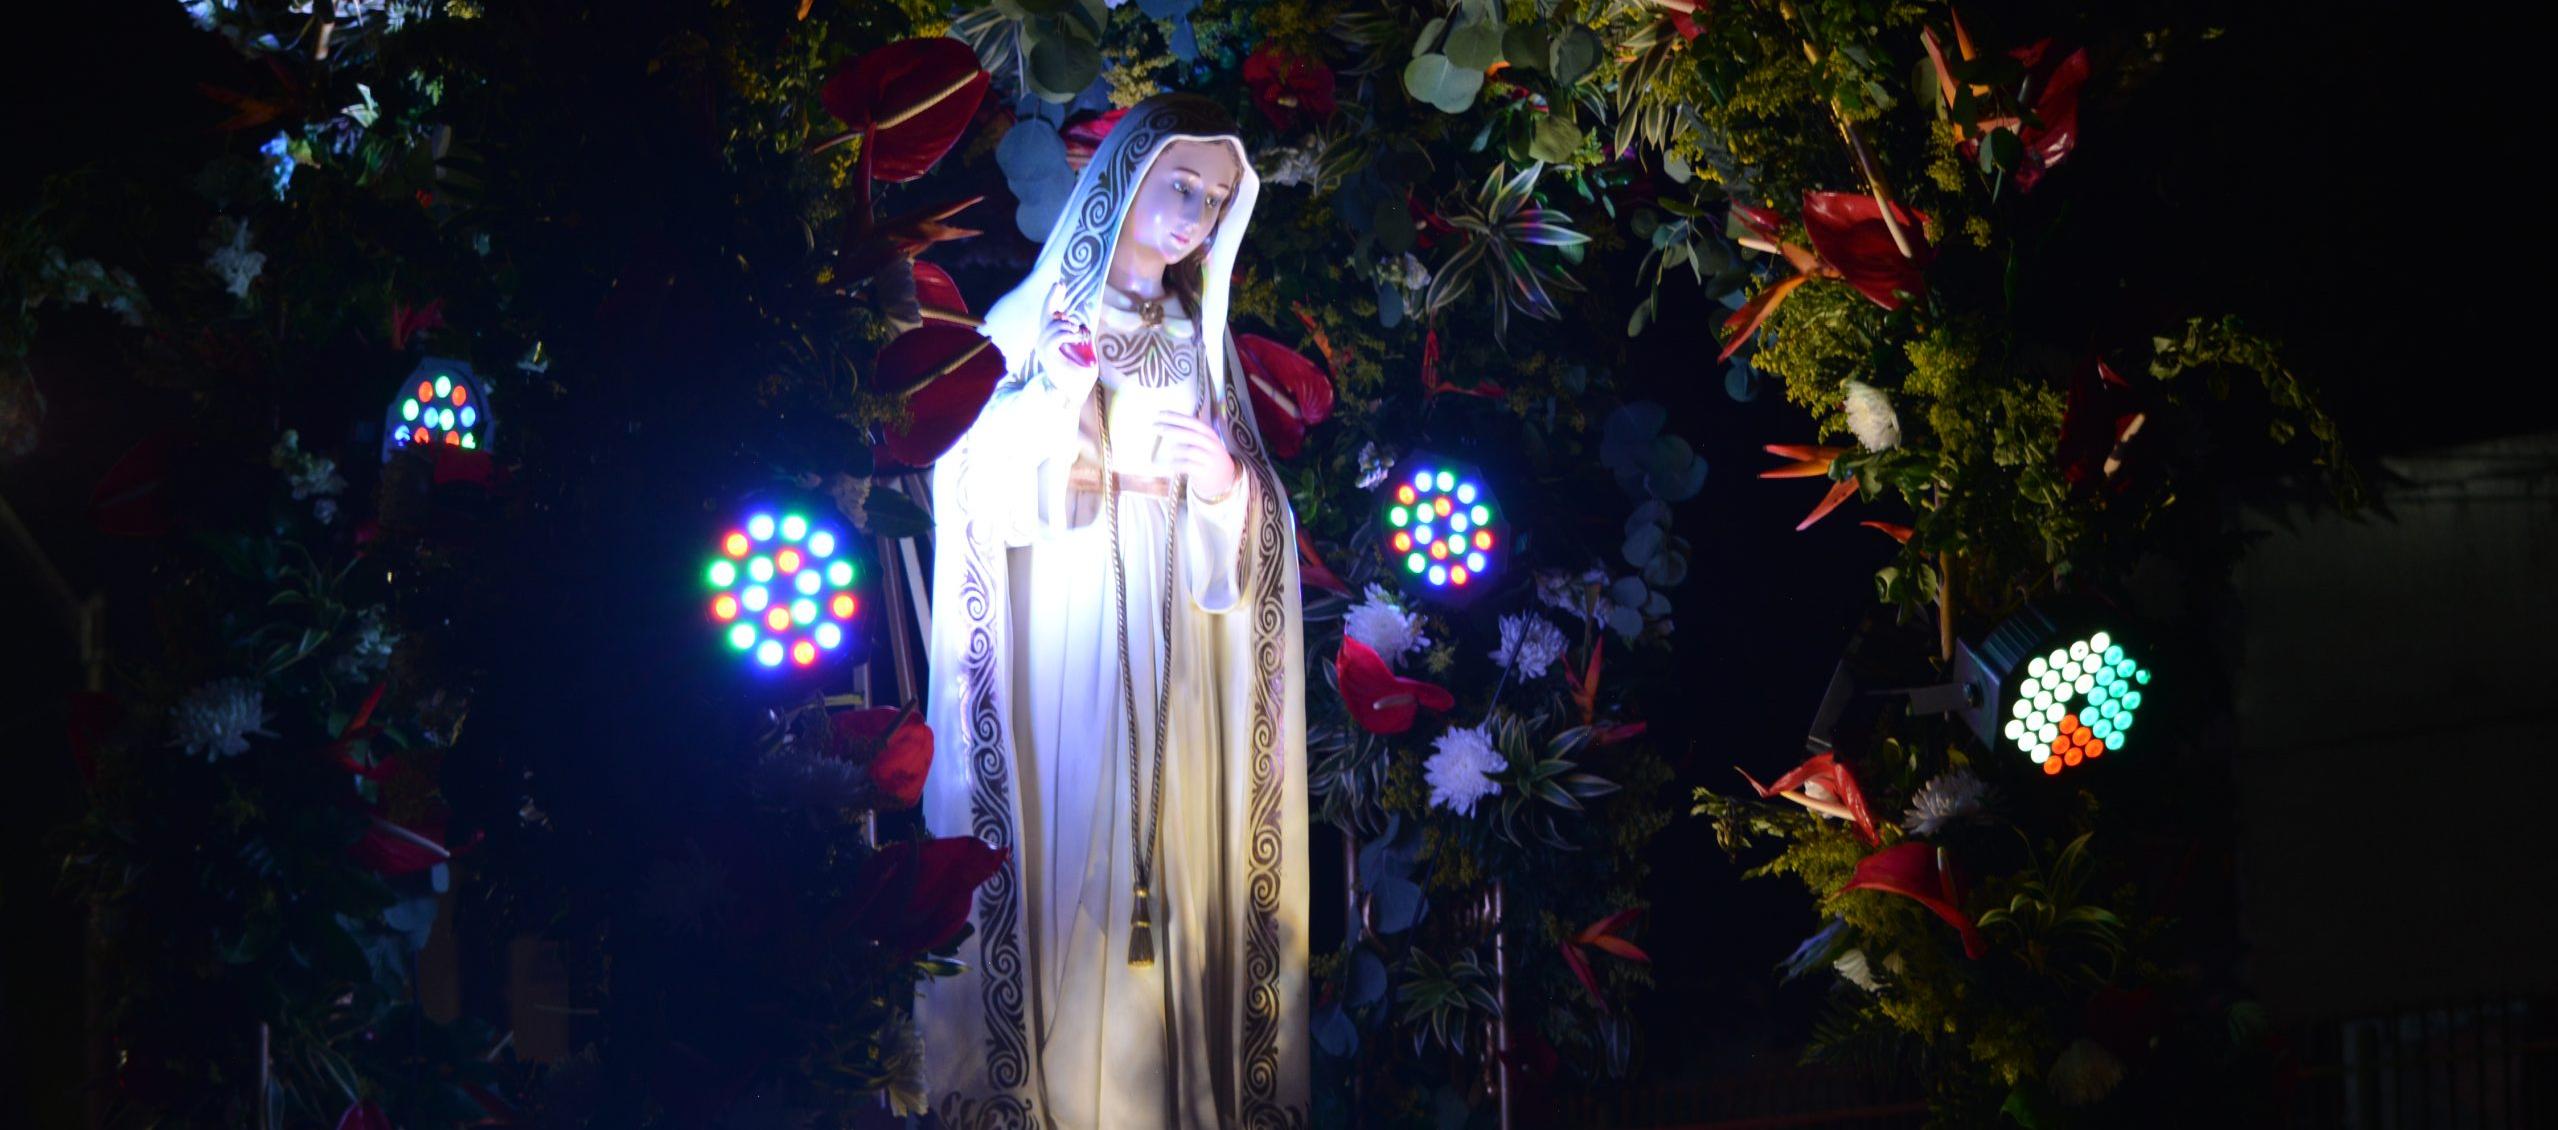 Virgen María.